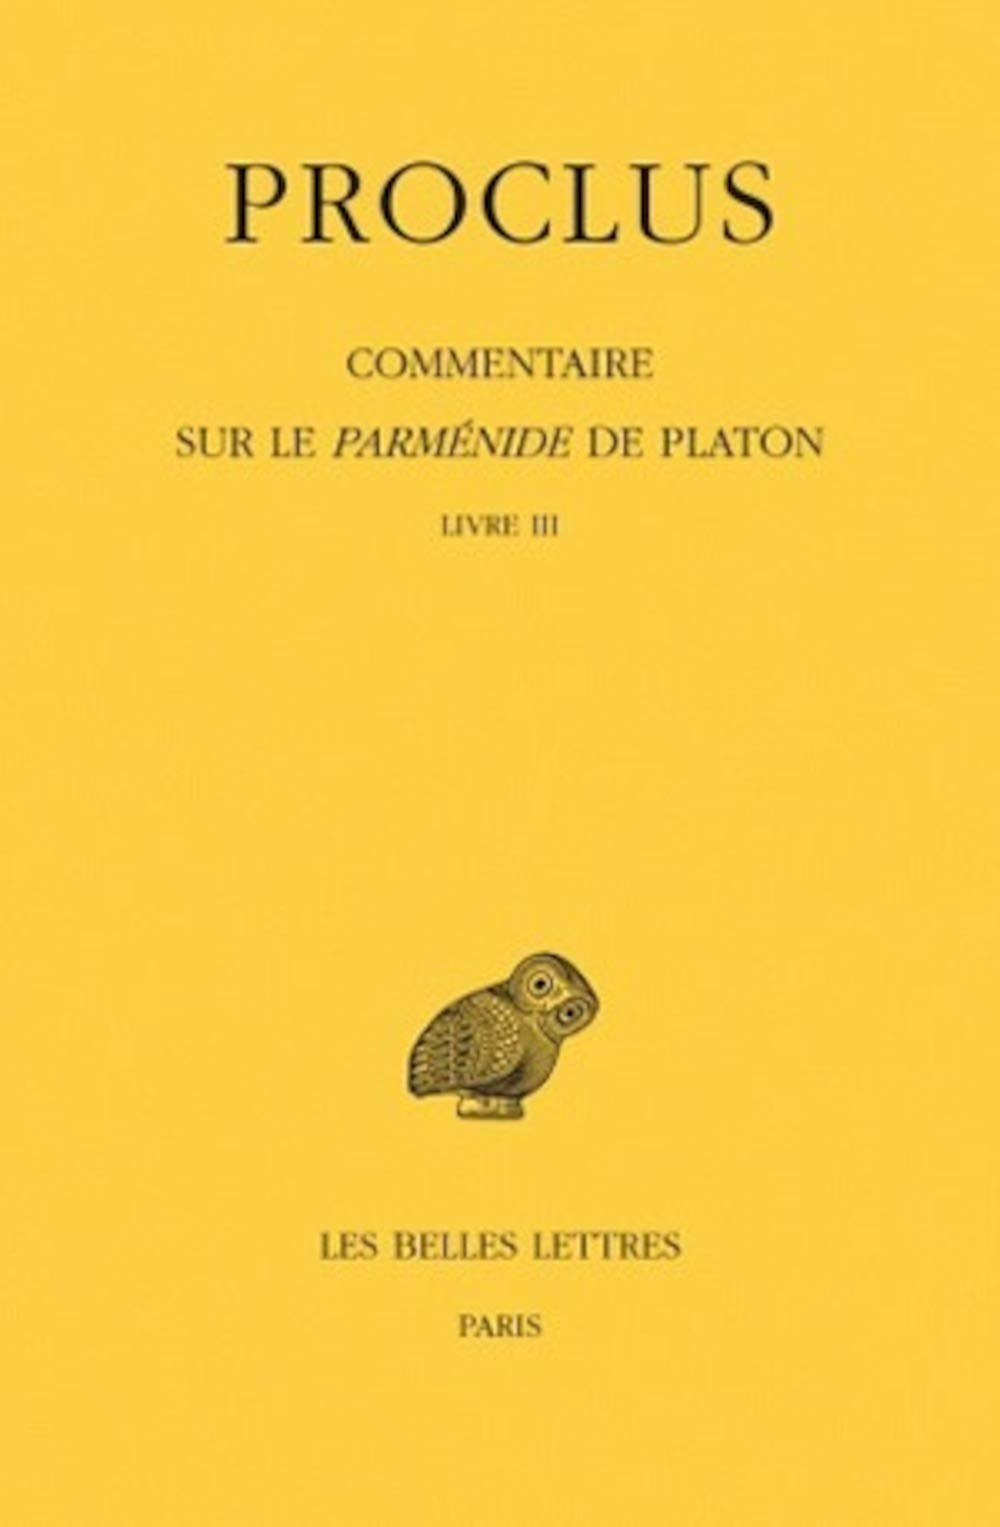 Commentaire sur le Parménide de Platon. Vol. 3. Livre III